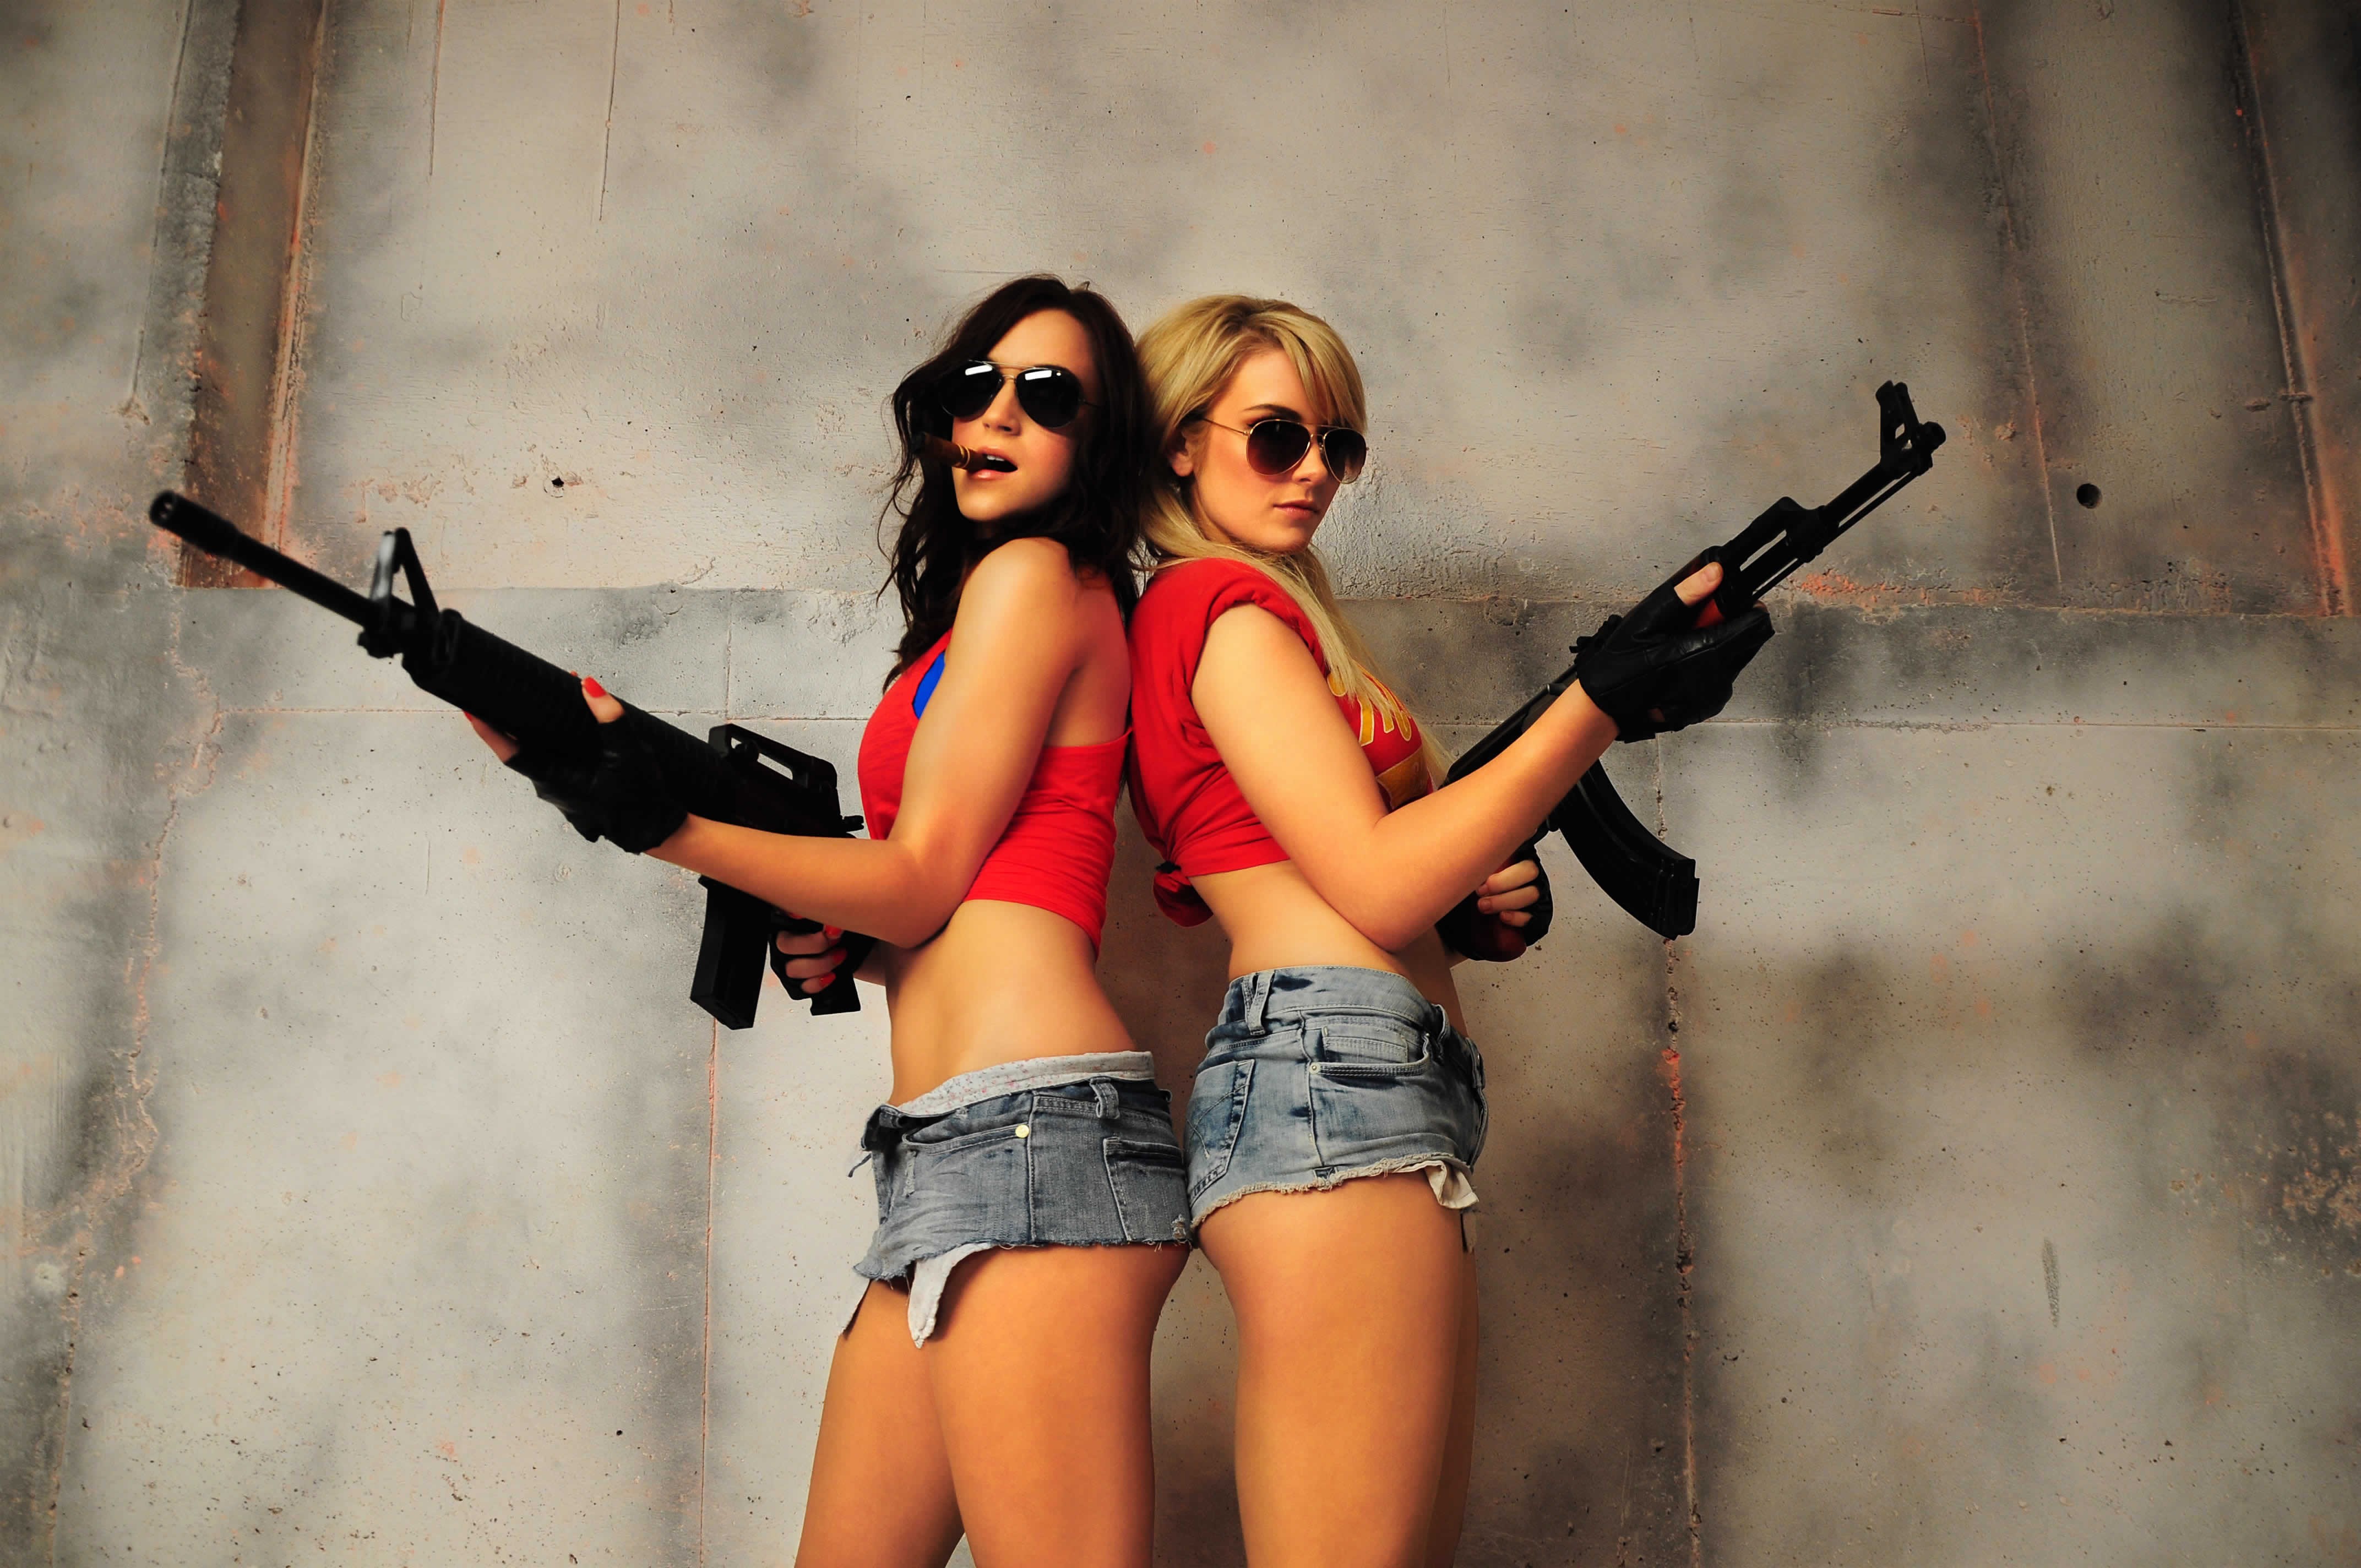 Твоя телка пушка. Красивые девушки с оружием. Опасная девушка. Блондинка и брюнетка с пистолетом. Девушка с оружием в очках.